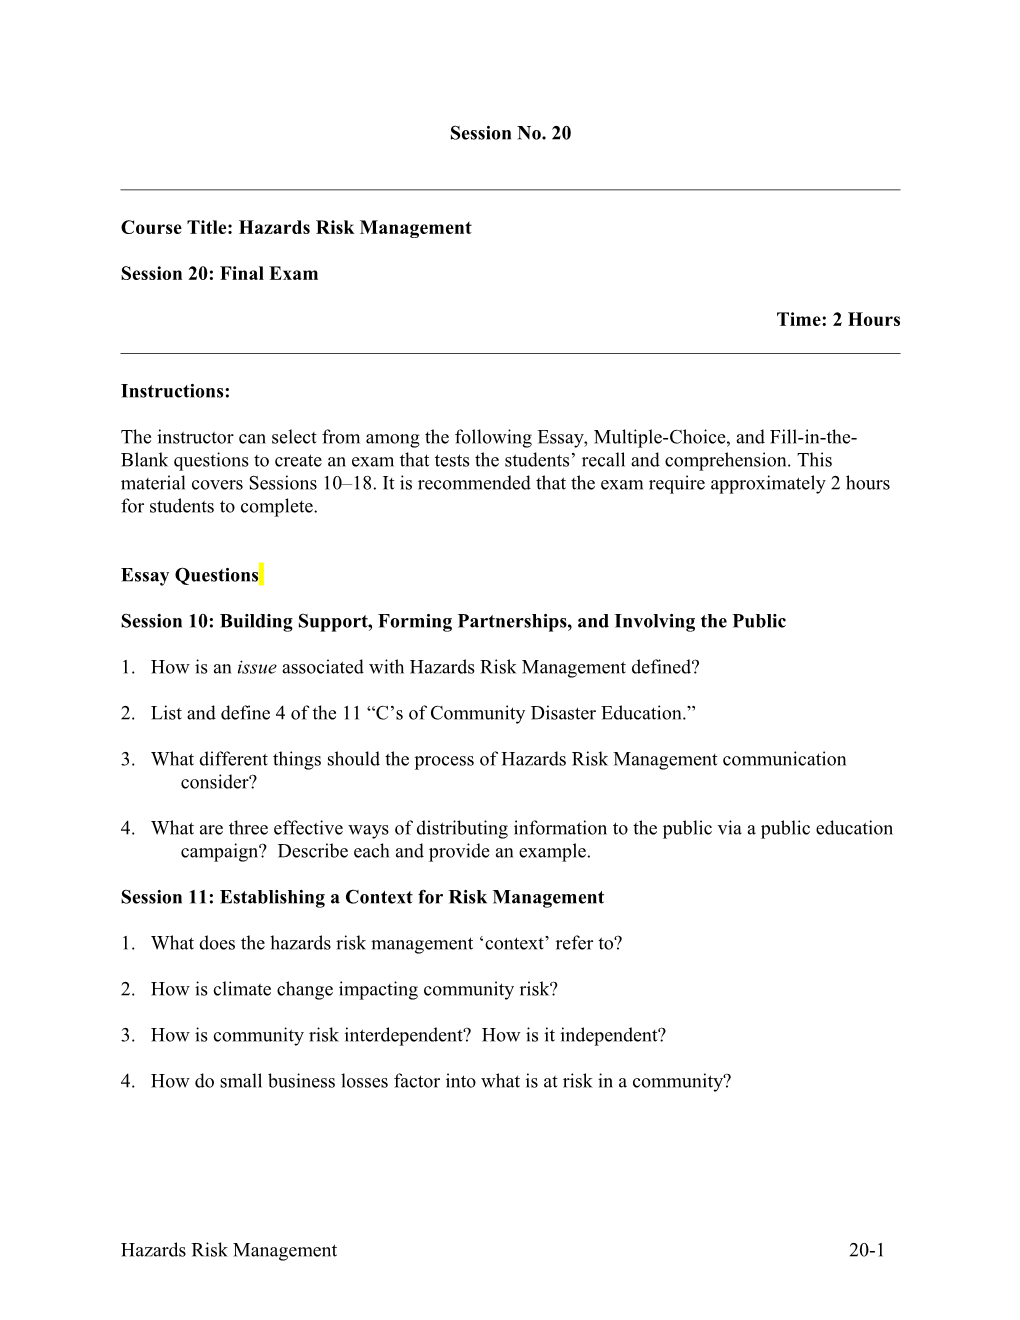 Course Title: Hazards Risk Management s1